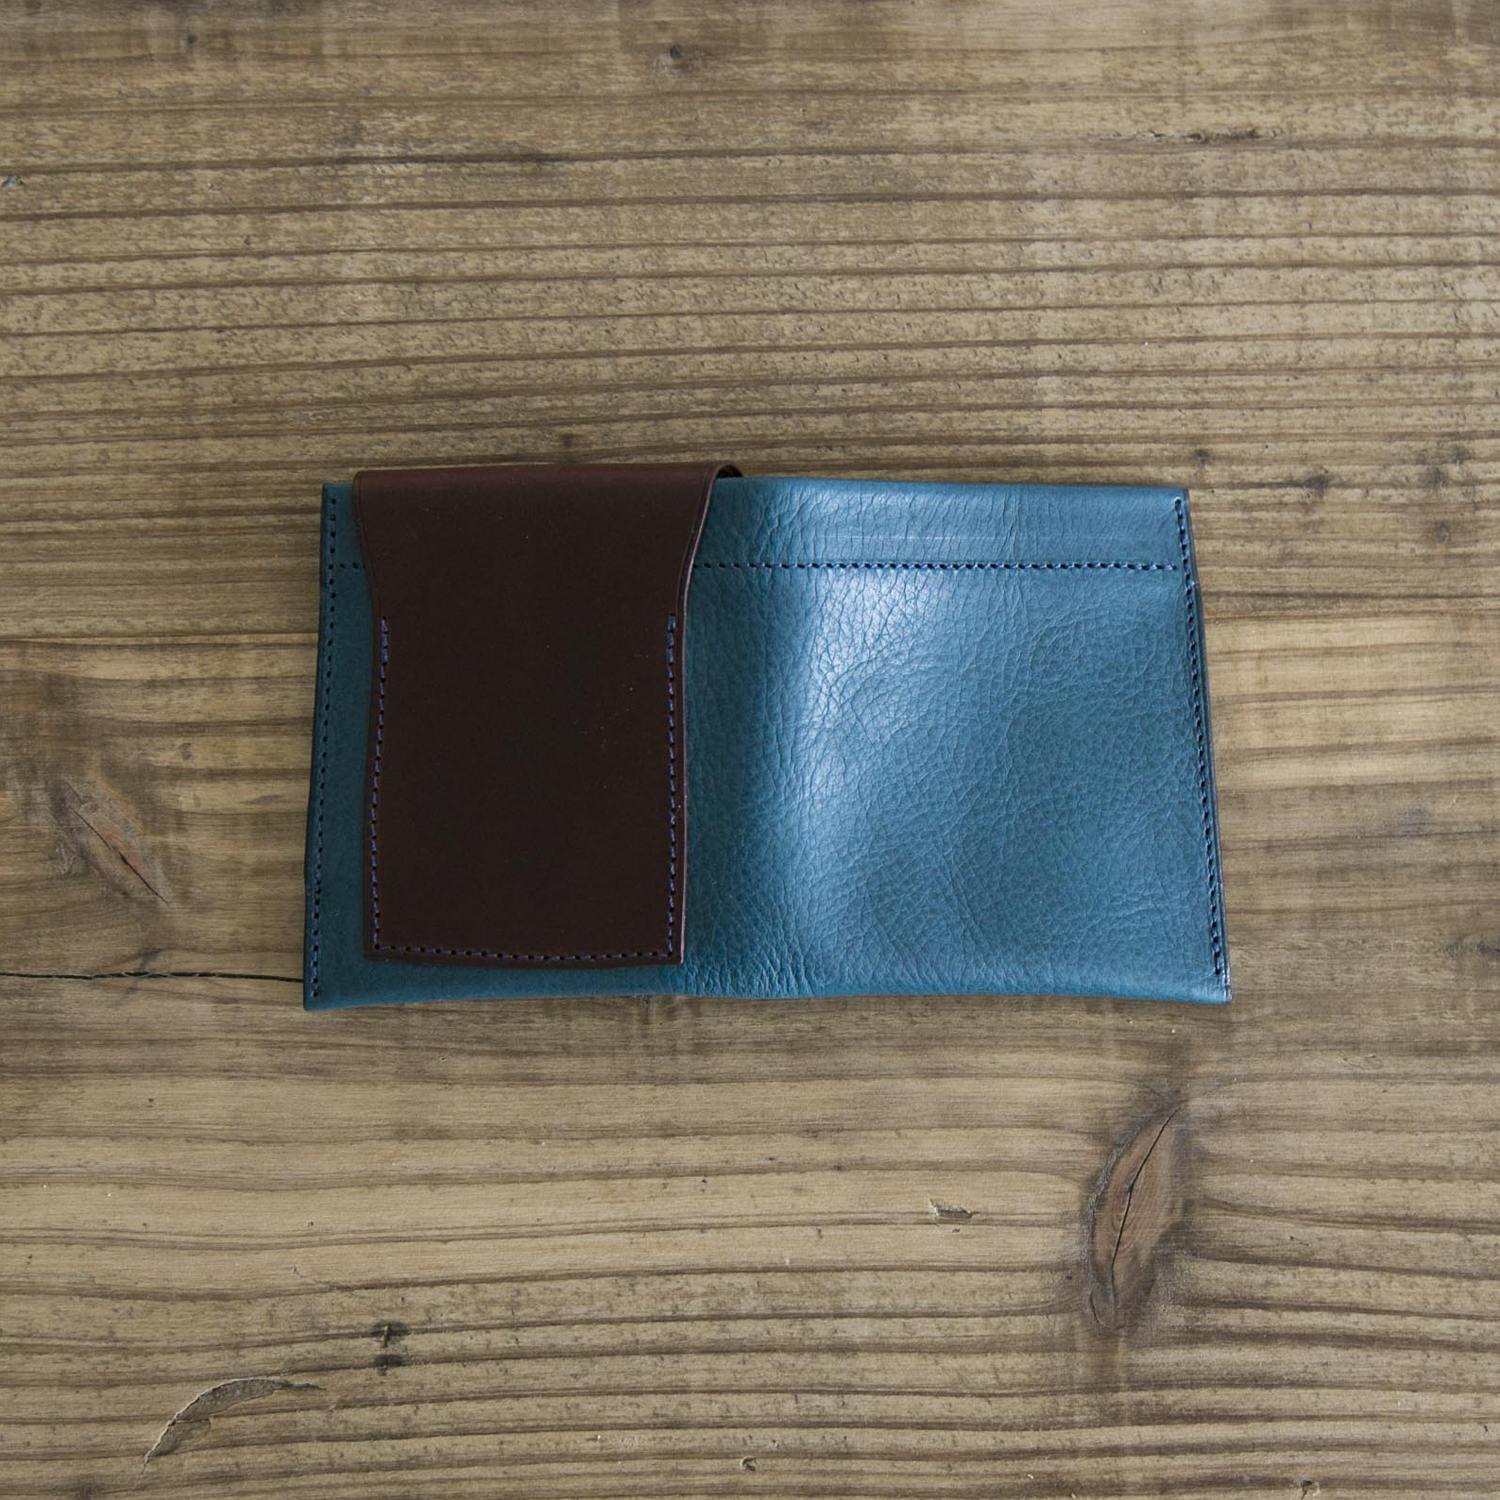 m.ripple/二つ折り財布 -連れ添うごとに完成度があがる二つ折り財布